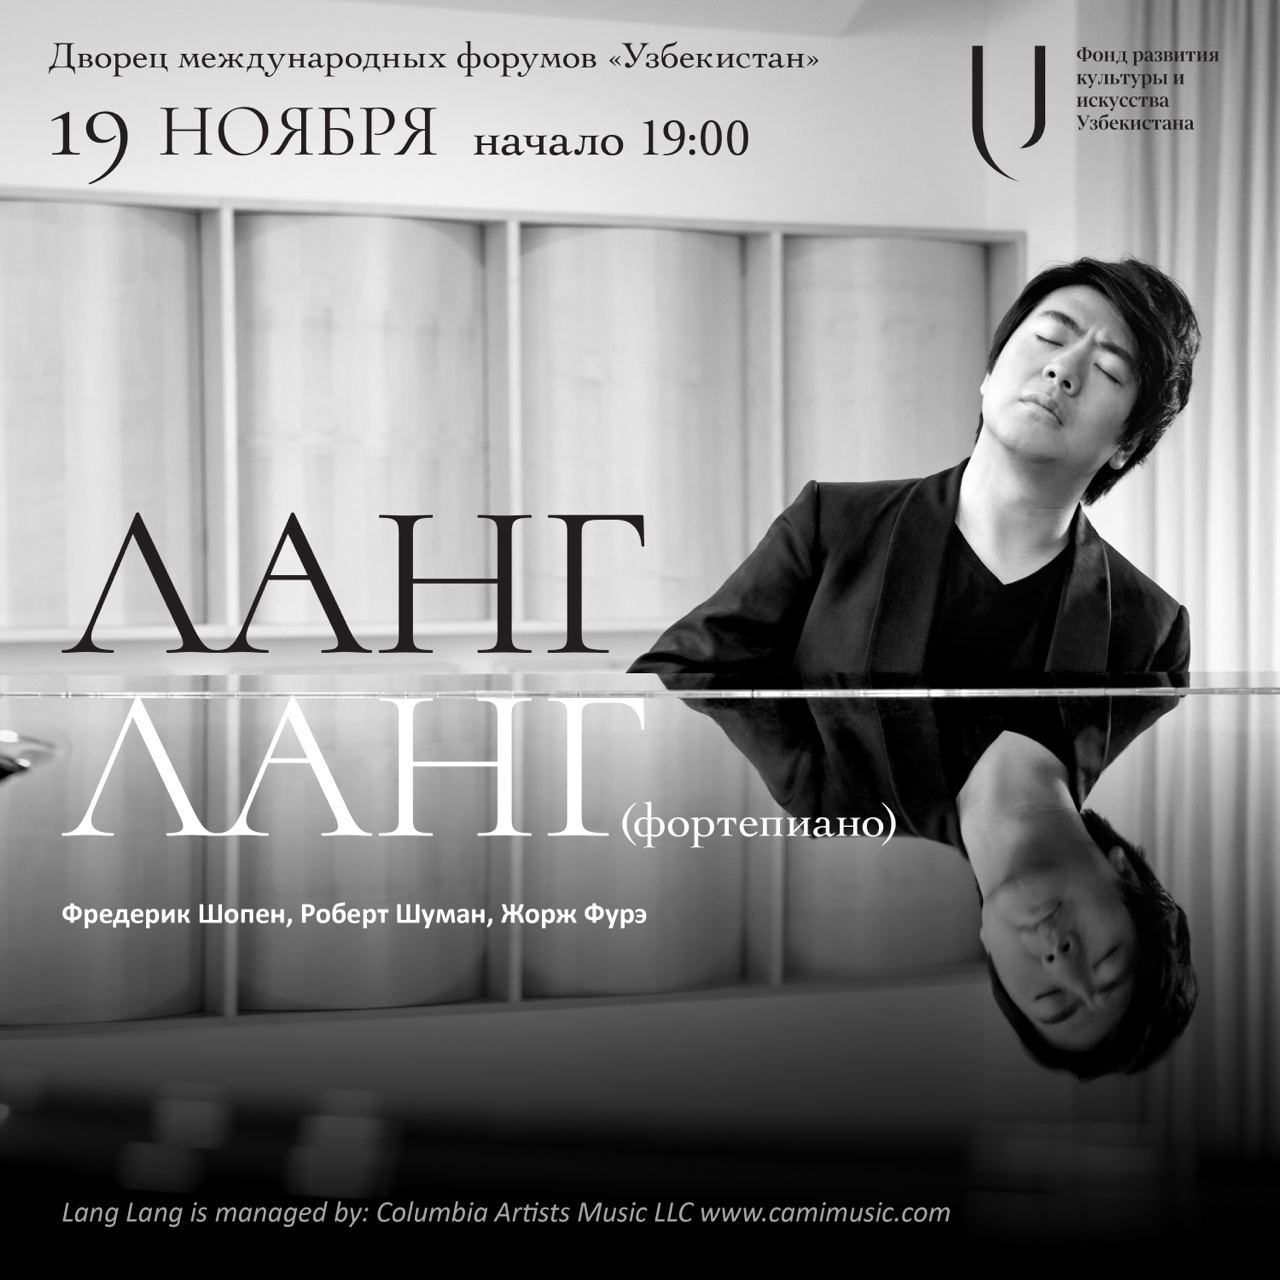 19-noyabrya-v-tashkente-vpervye-s-solnym-koncertom-vystupit-kitayskiy-pianist-virtuoz-lang-lang